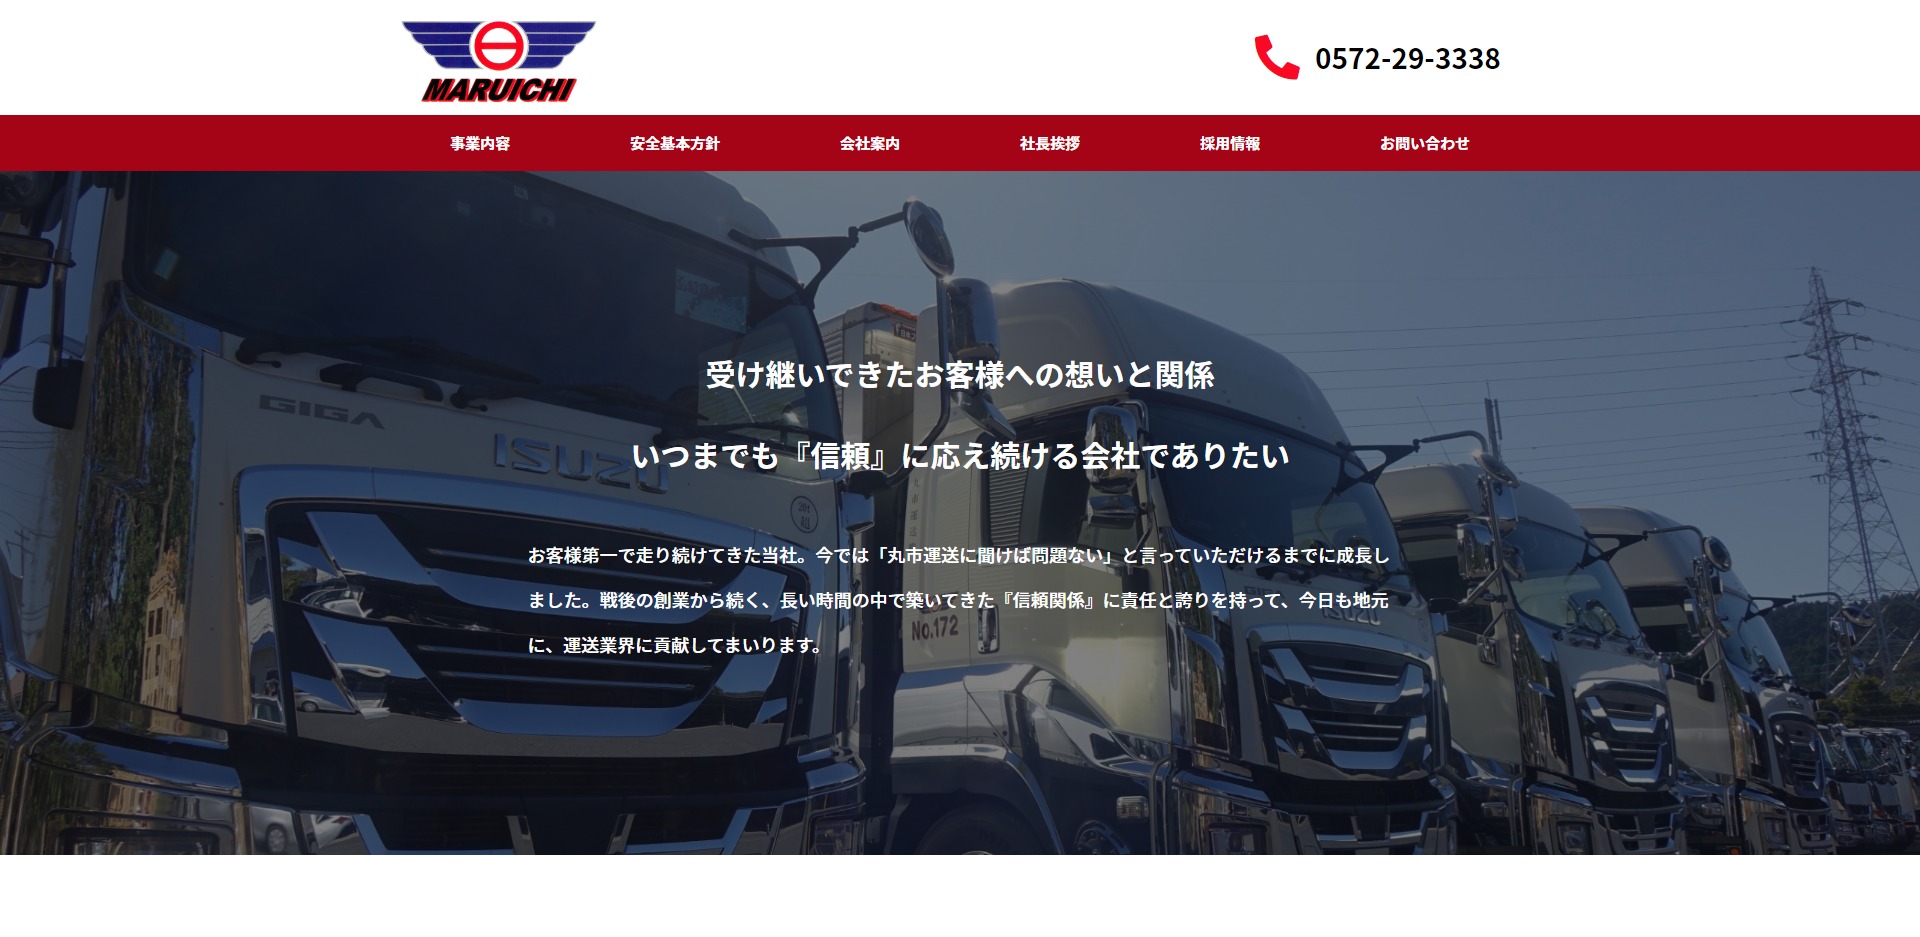 FireShot Capture 779 - 丸市運送株式会社 - 受け継いできたお客様への想いと関係。いつまでも『信頼』に応え続ける会社でありたい - maruichi-unsou.com